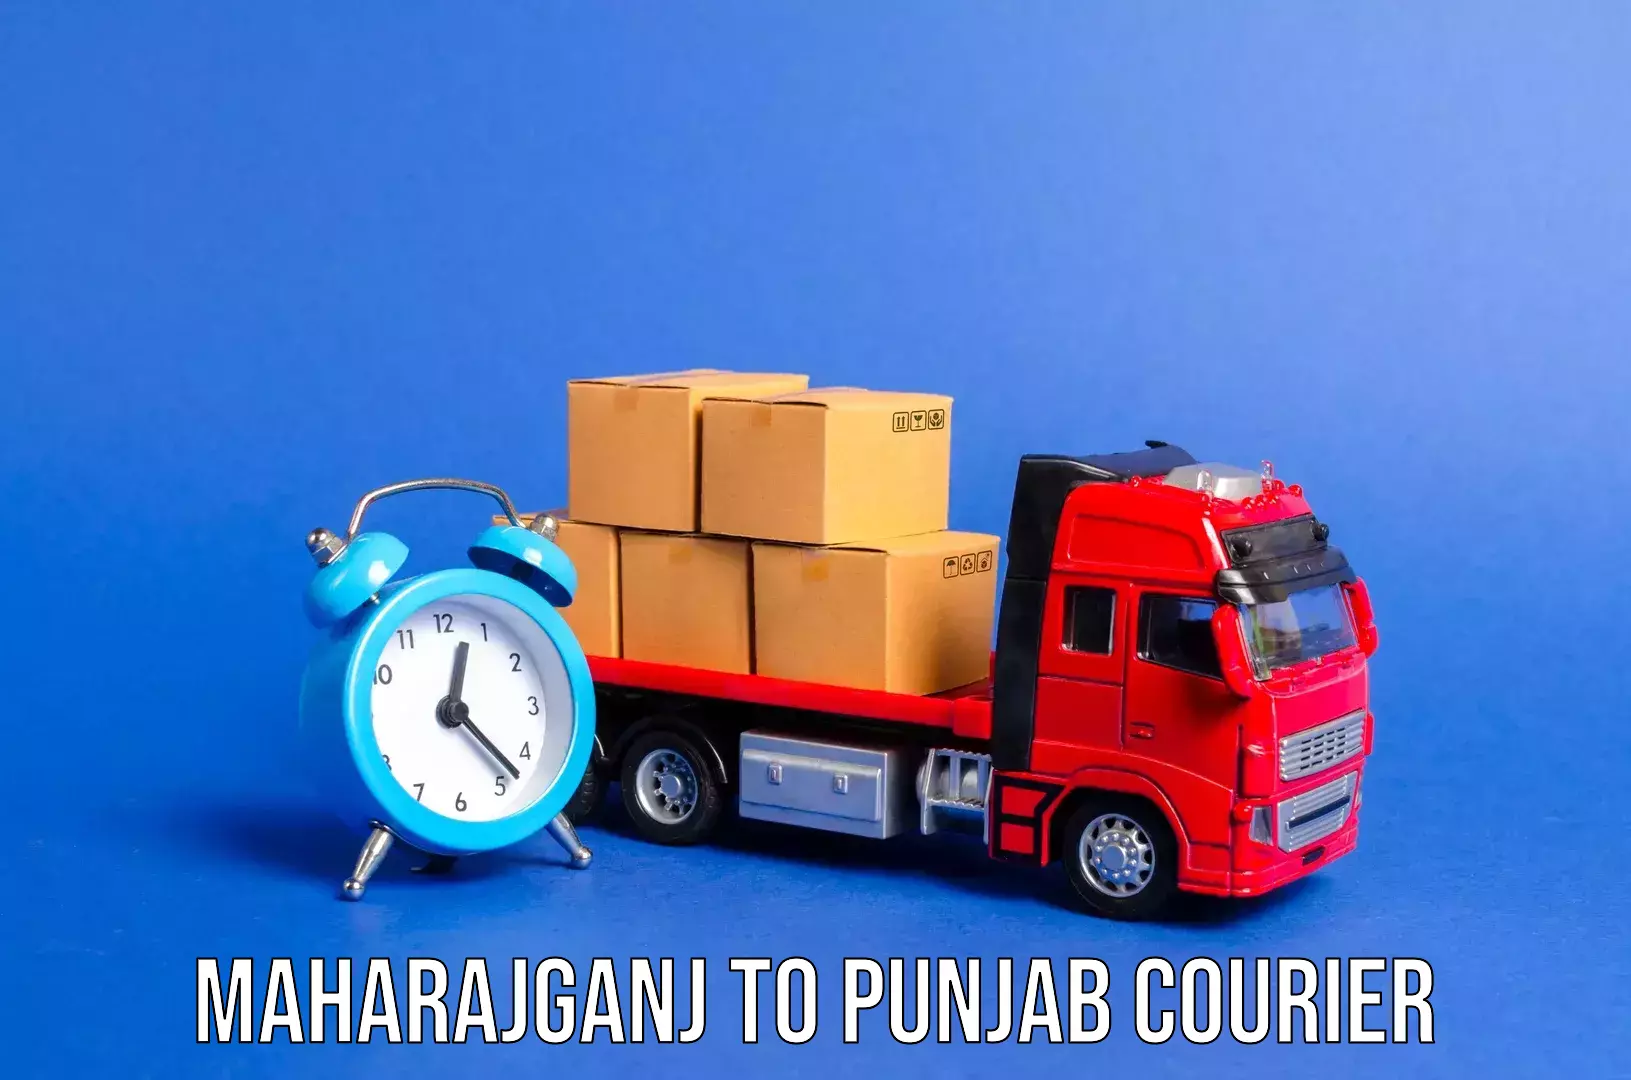 Luggage forwarding service Maharajganj to Ludhiana